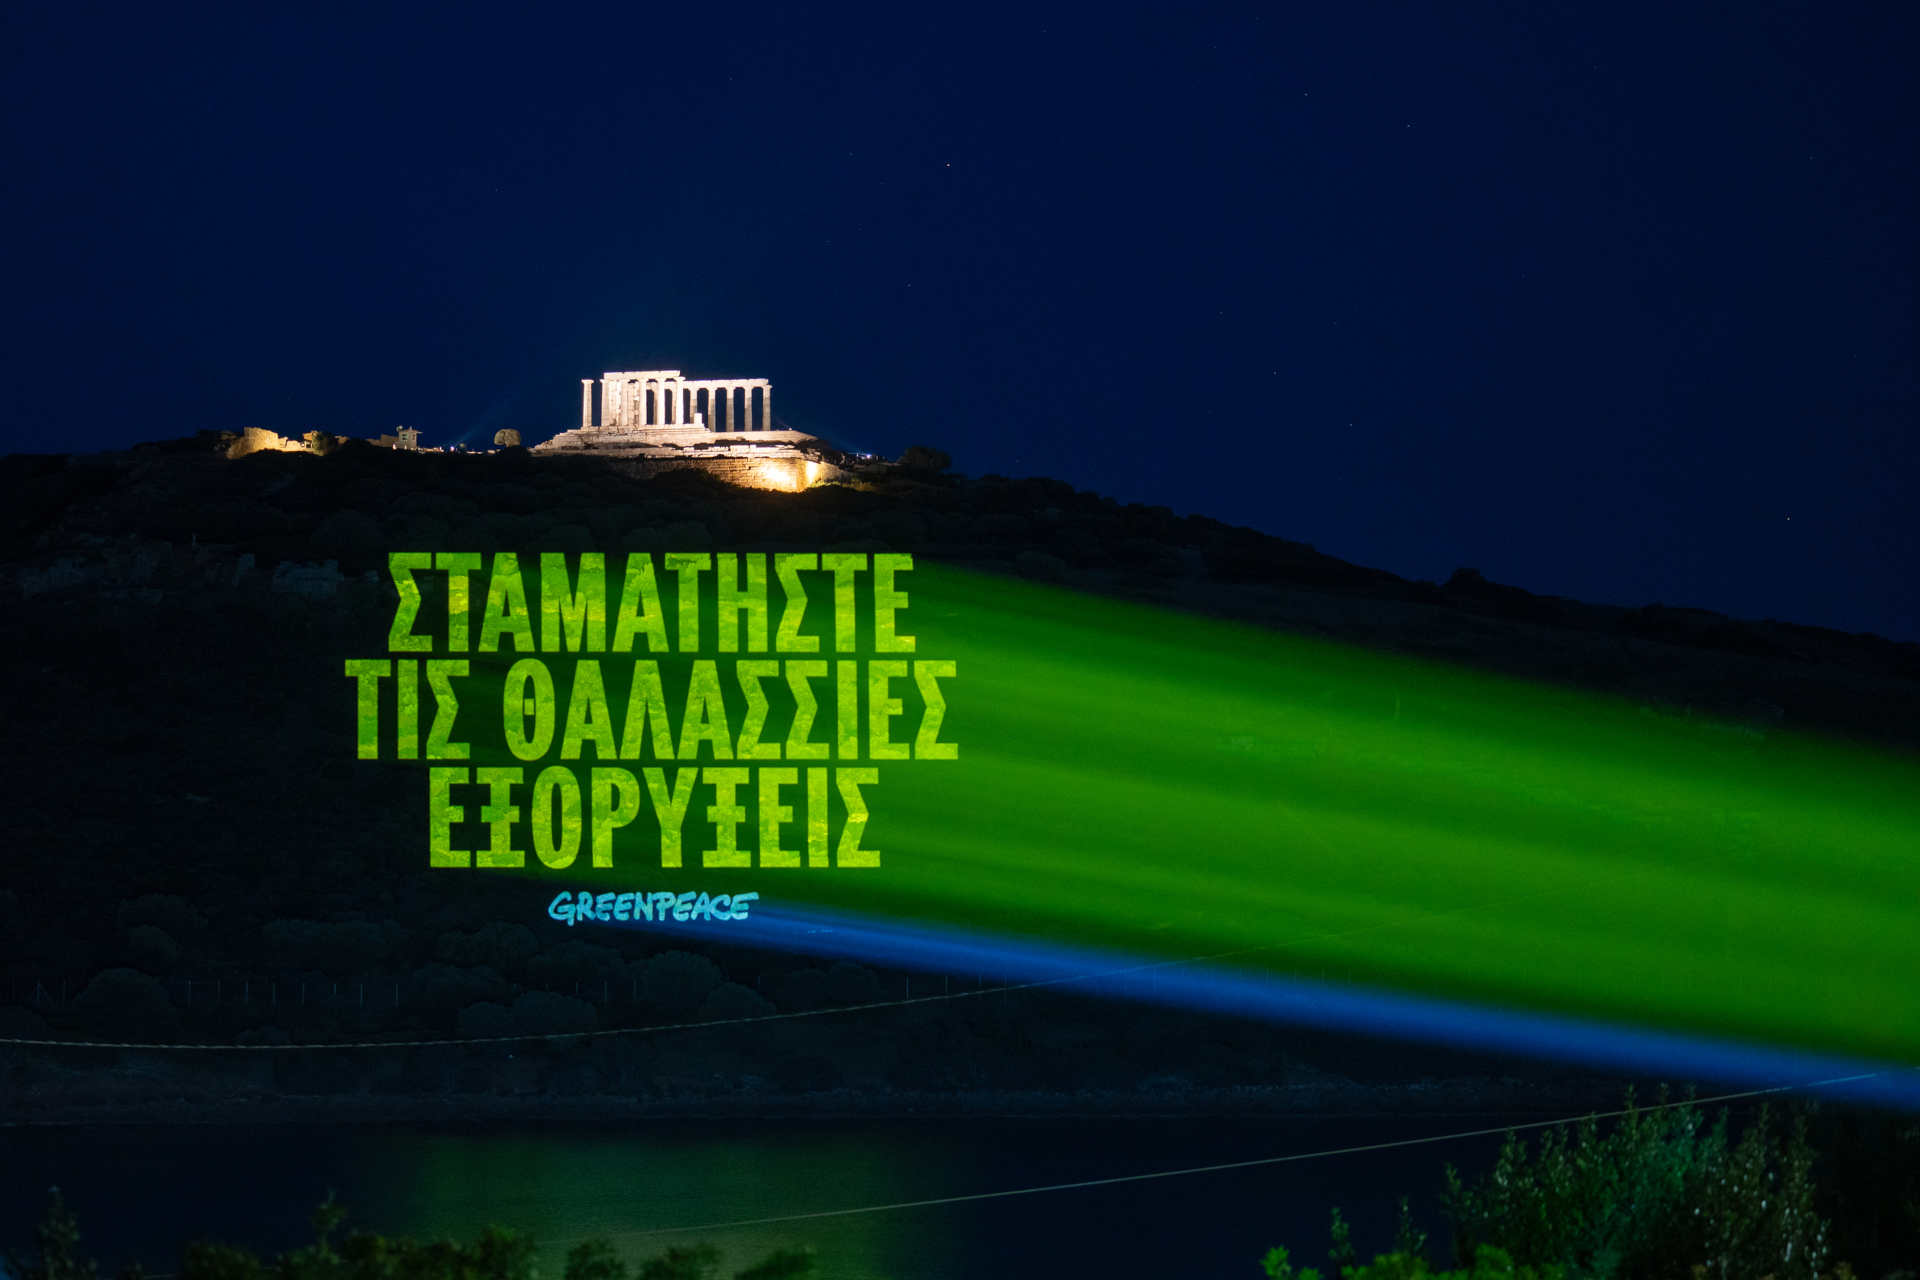 Grecia: il messaggio in greco che recita 